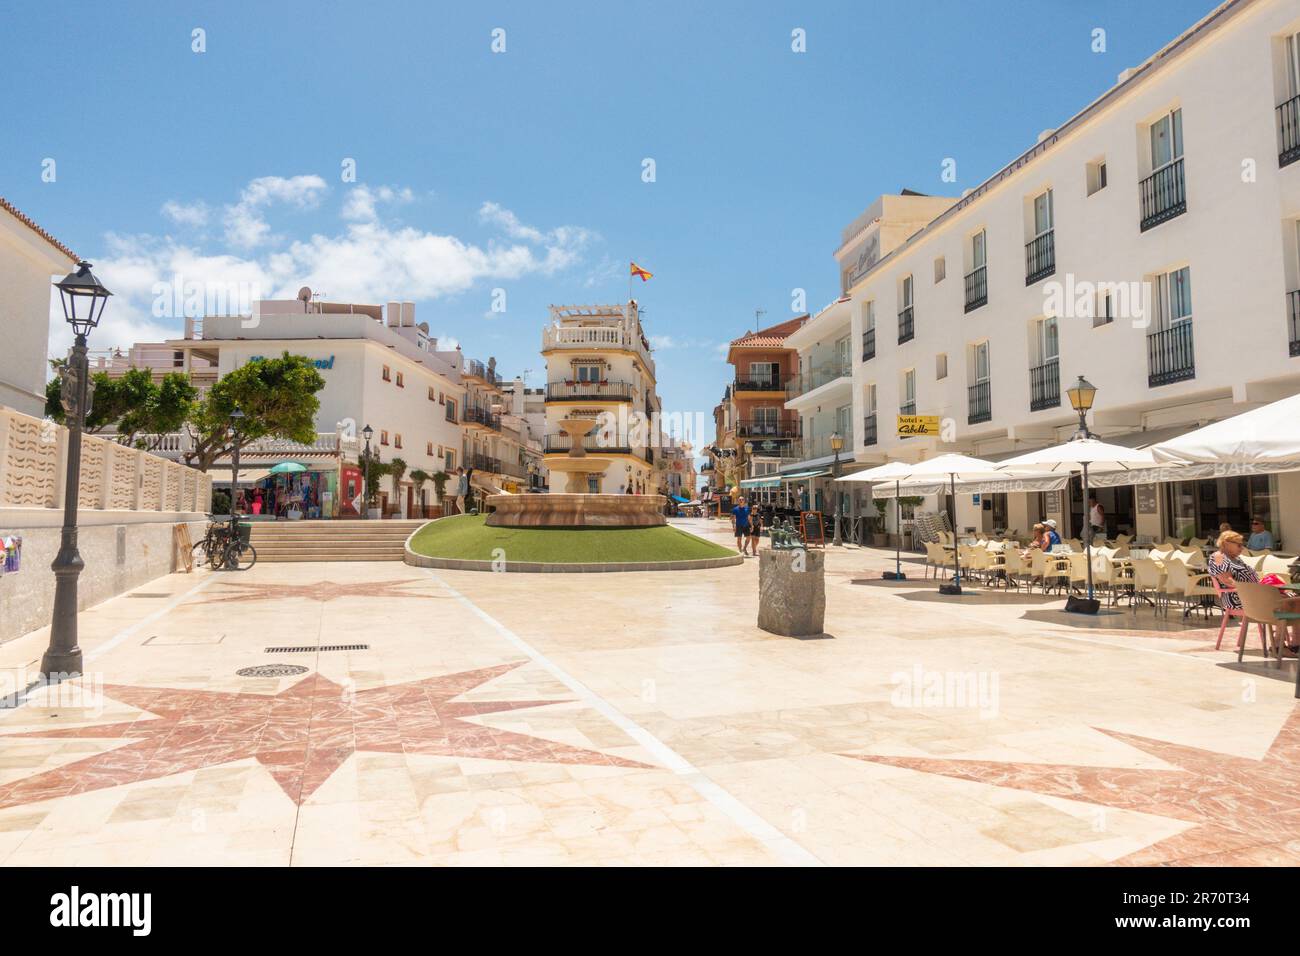 Place sur une chaude journée à Carihuela avec des restaurants et des bars, Torremolinos, Costa del sol, Espagne. Banque D'Images